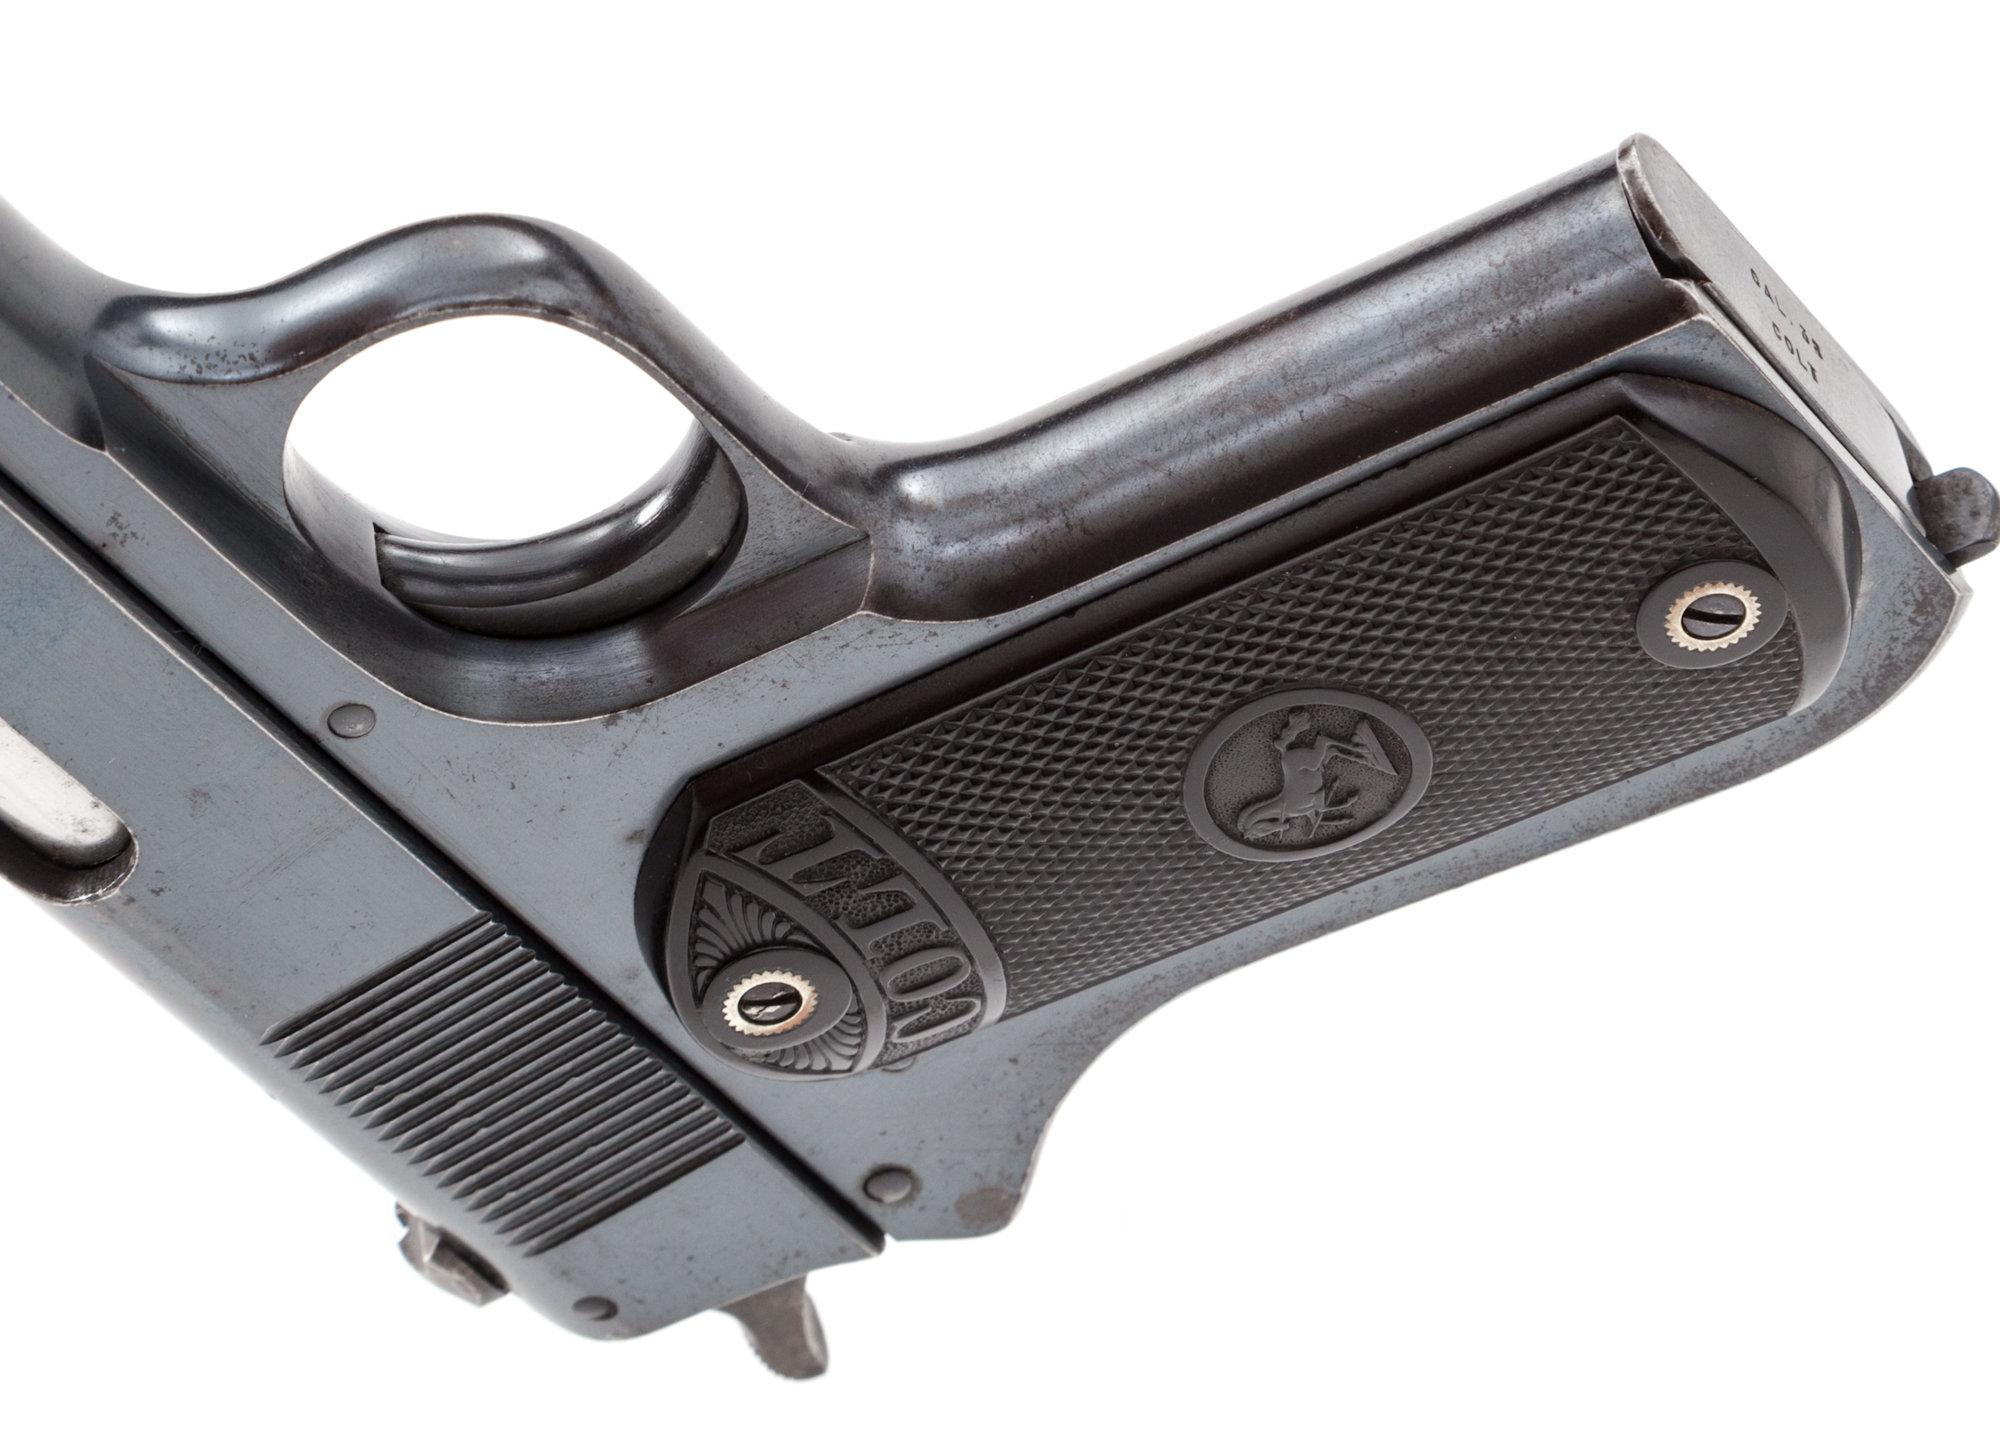 Colt Model 1903 Pocket Hammer Semi-Auto Pistol